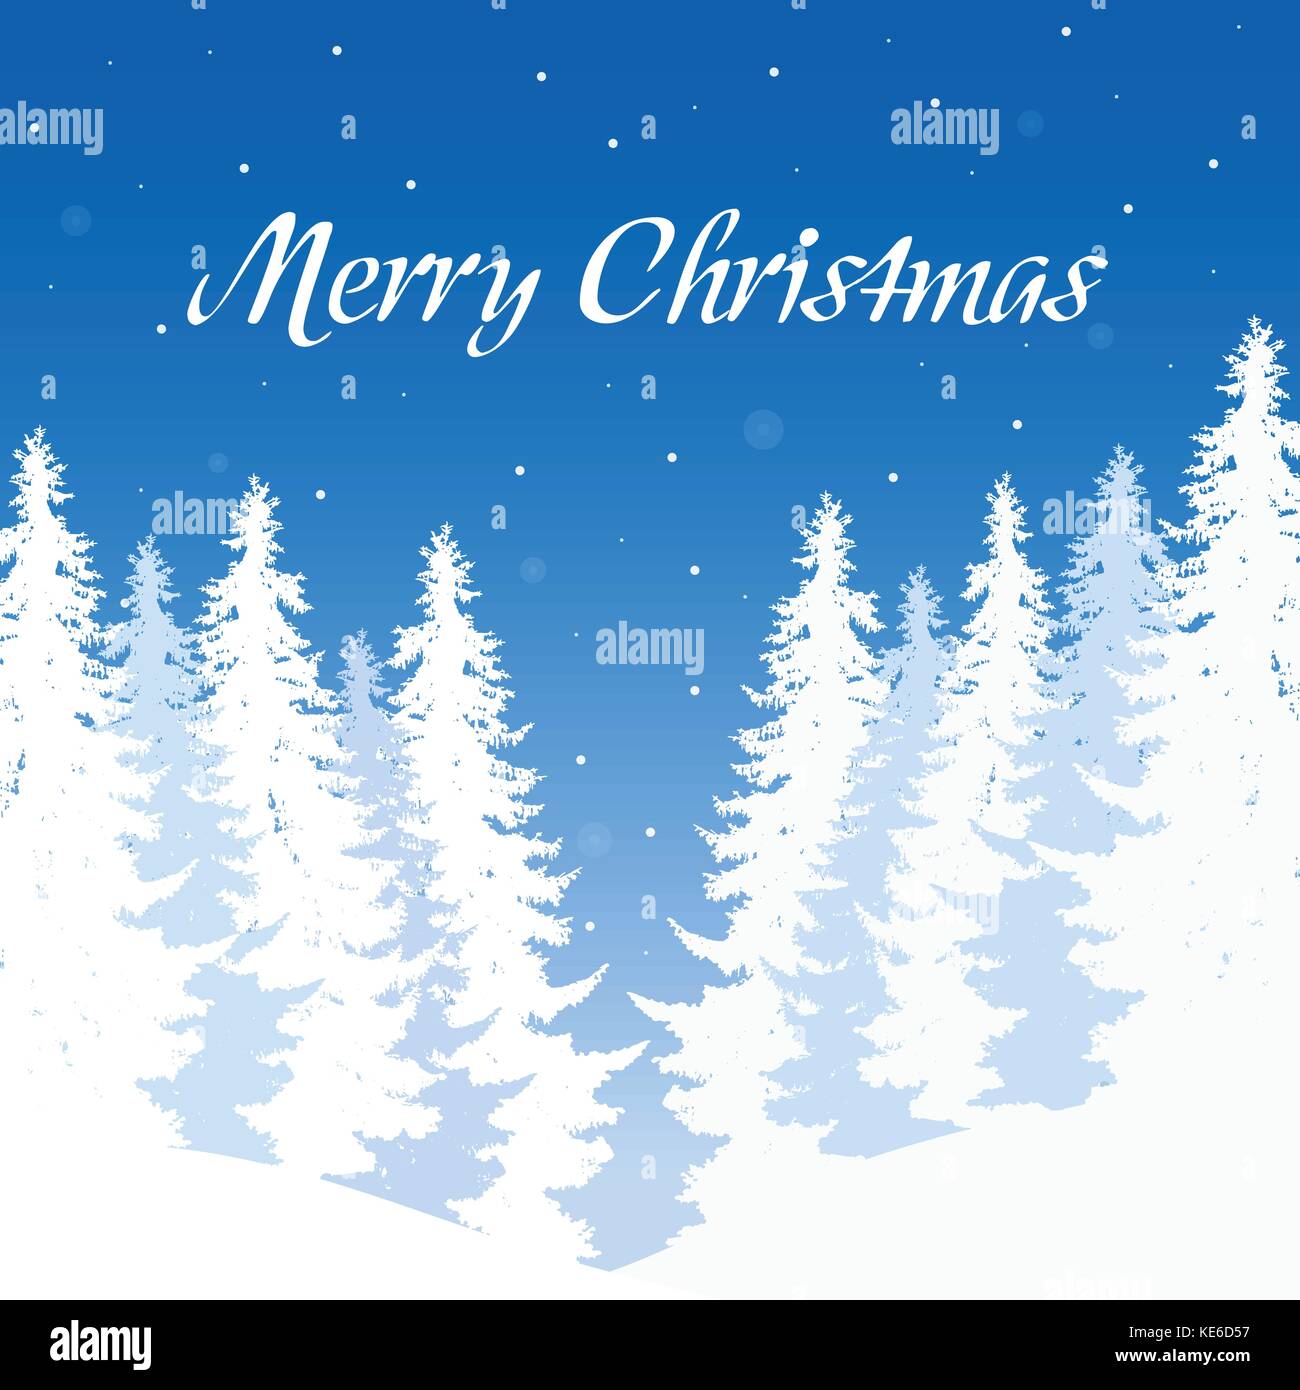 Paysage d'hiver vectoriel avec forêt enneigée et arbres avec chute de neige sous ciel bleu avec l'inscription Joyeux Noël Illustration de Vecteur